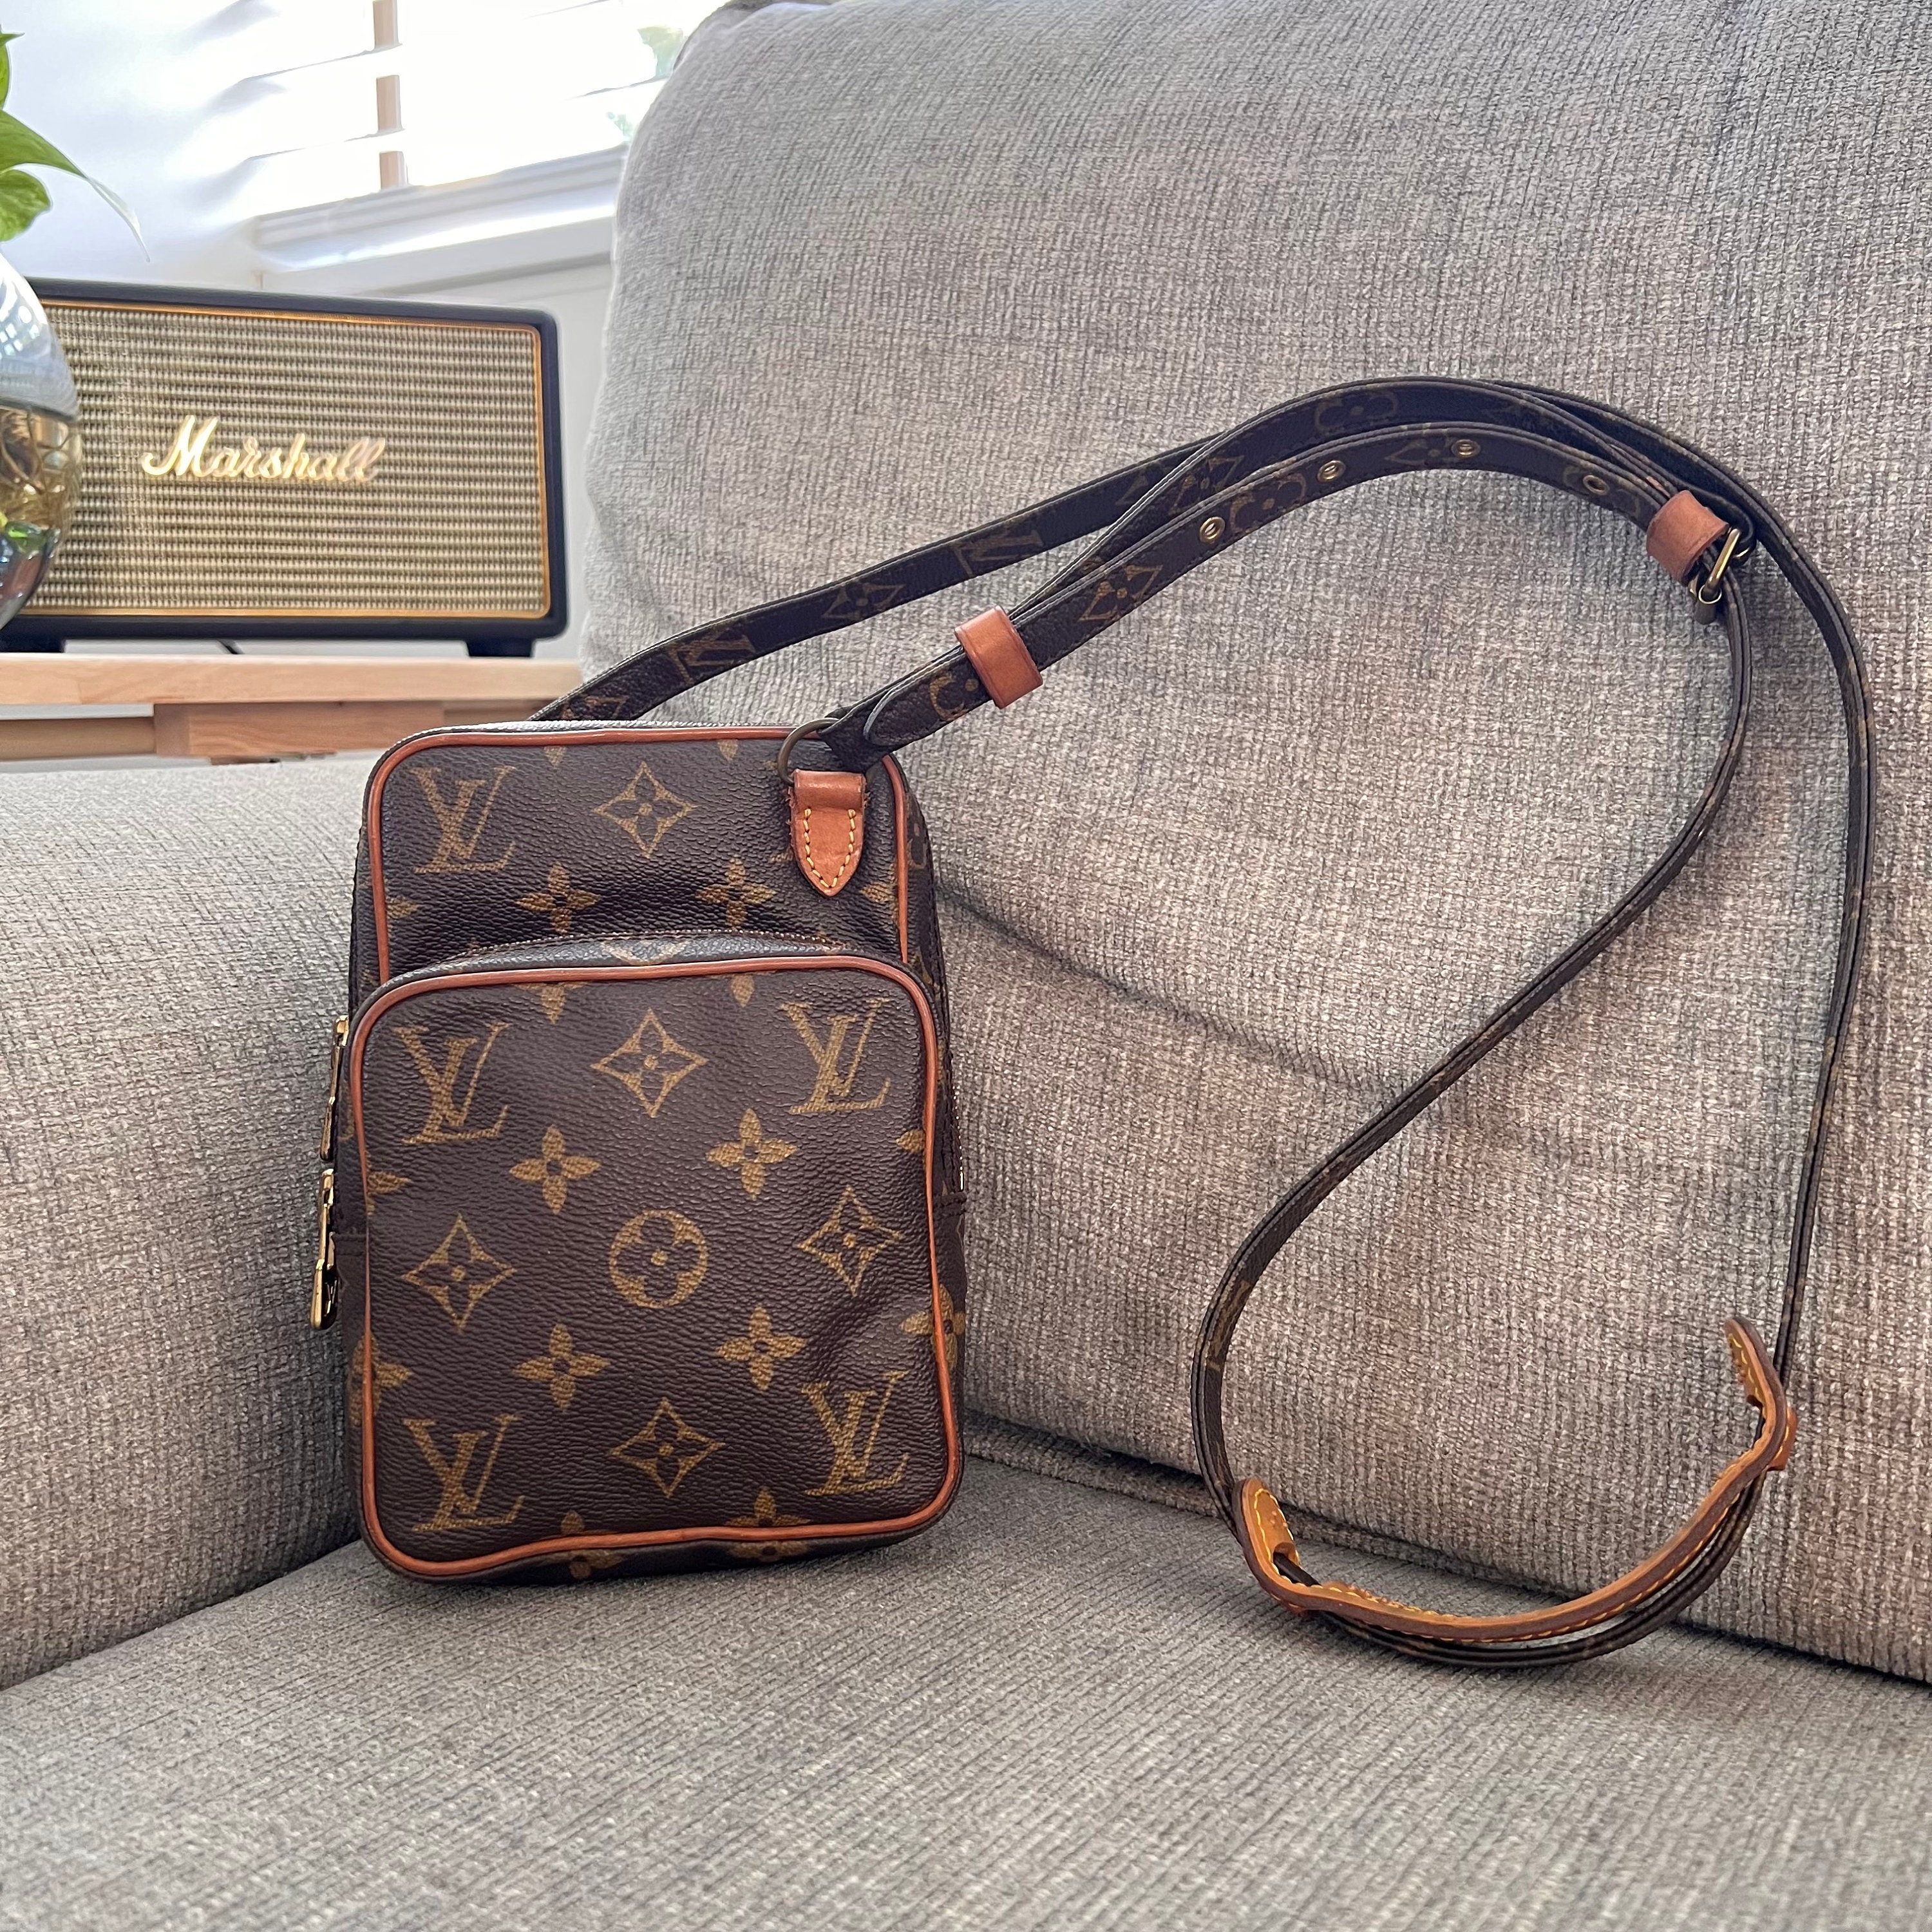 Authentic Louis Vuitton Handbags 